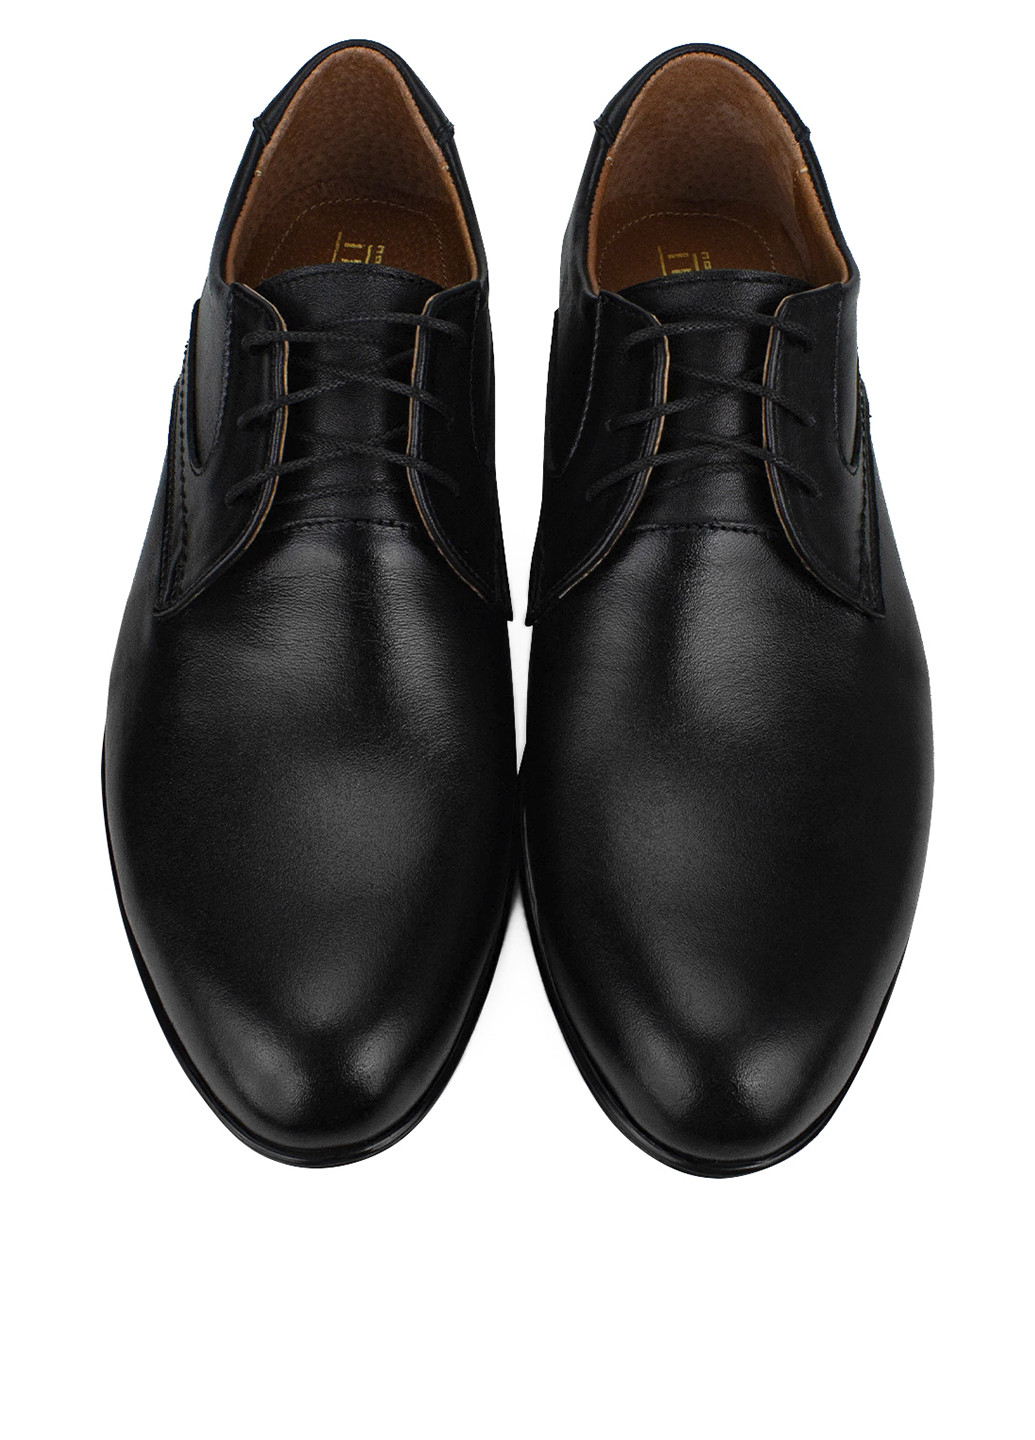 Черные классические туфли Seboni на шнурках